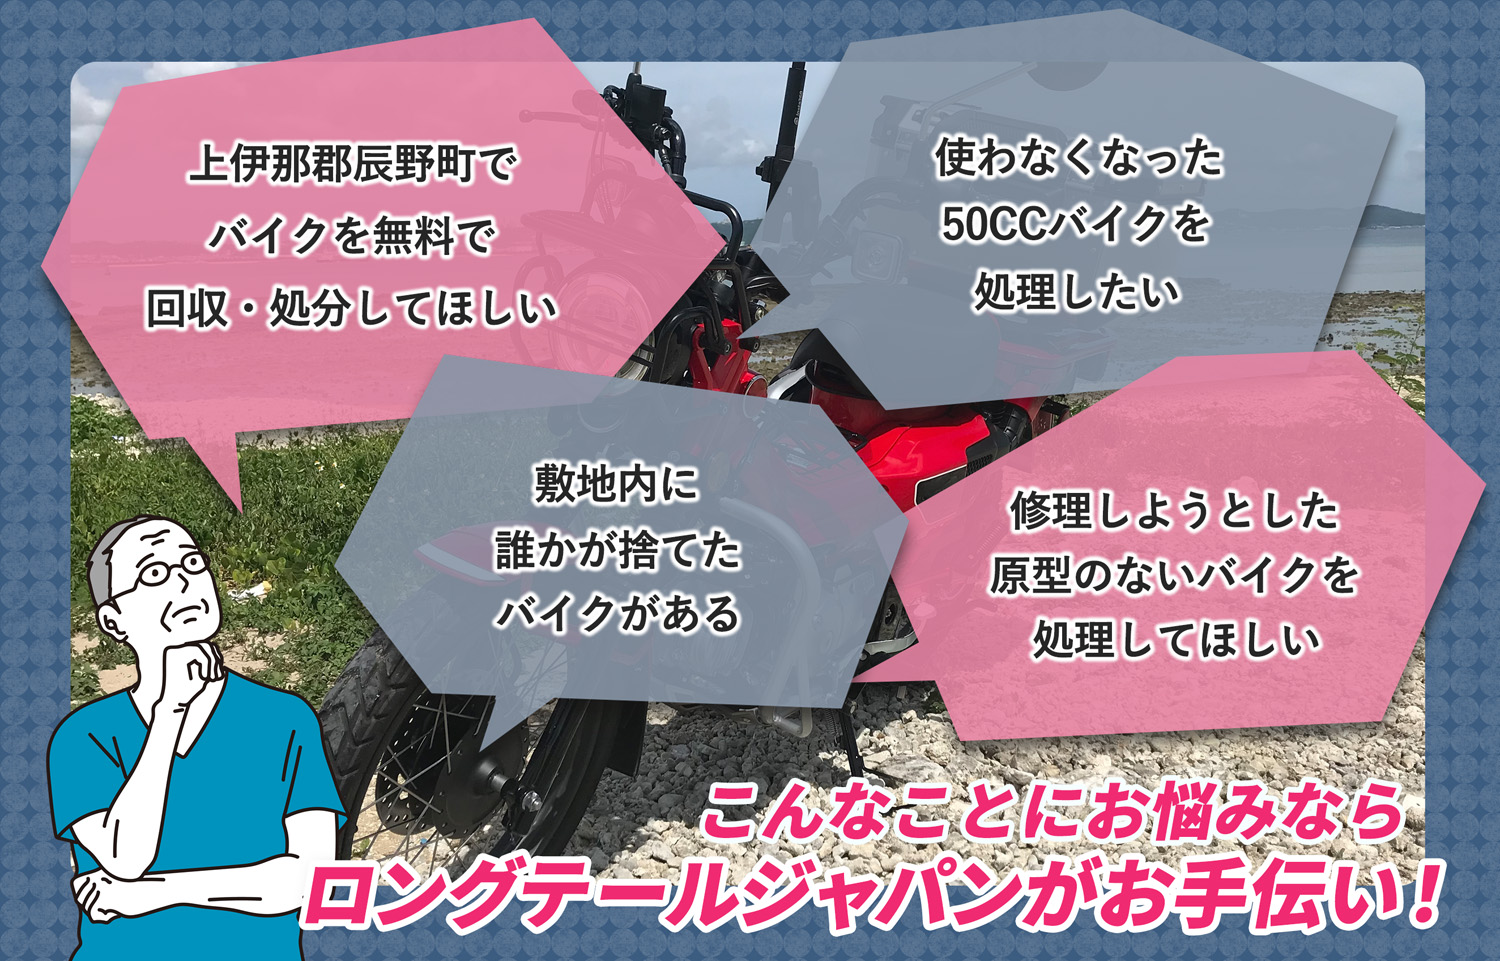 上伊那郡辰野町でこんなバイクの処分にお困りでしたらバイク無料回収処分隊がお手伝いいたします。